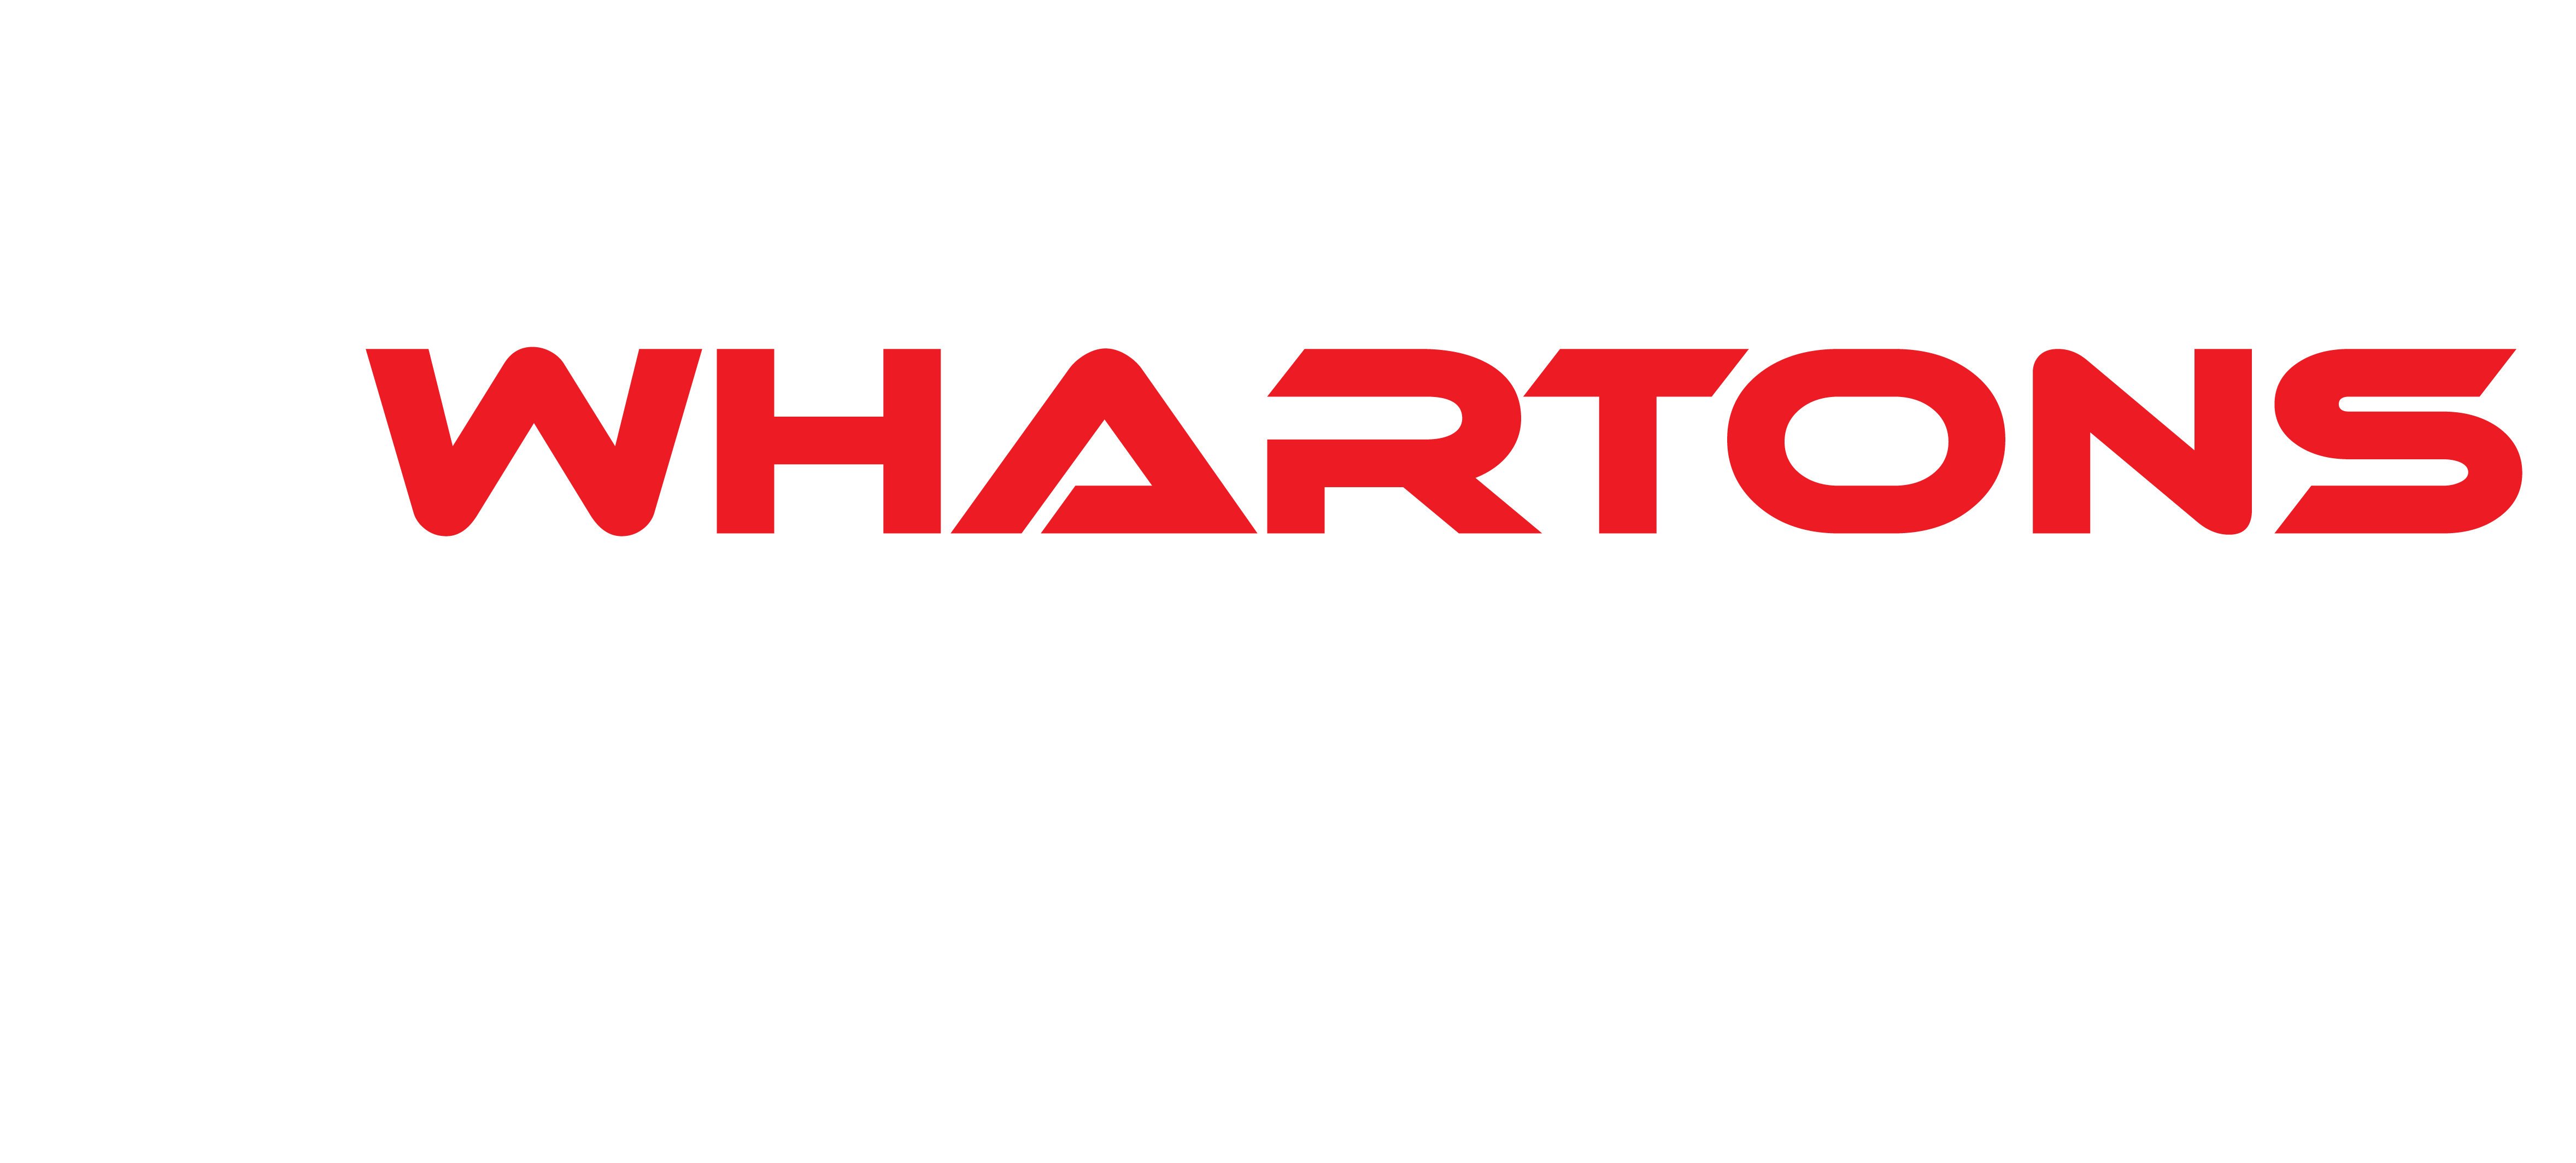 Whartons Mining